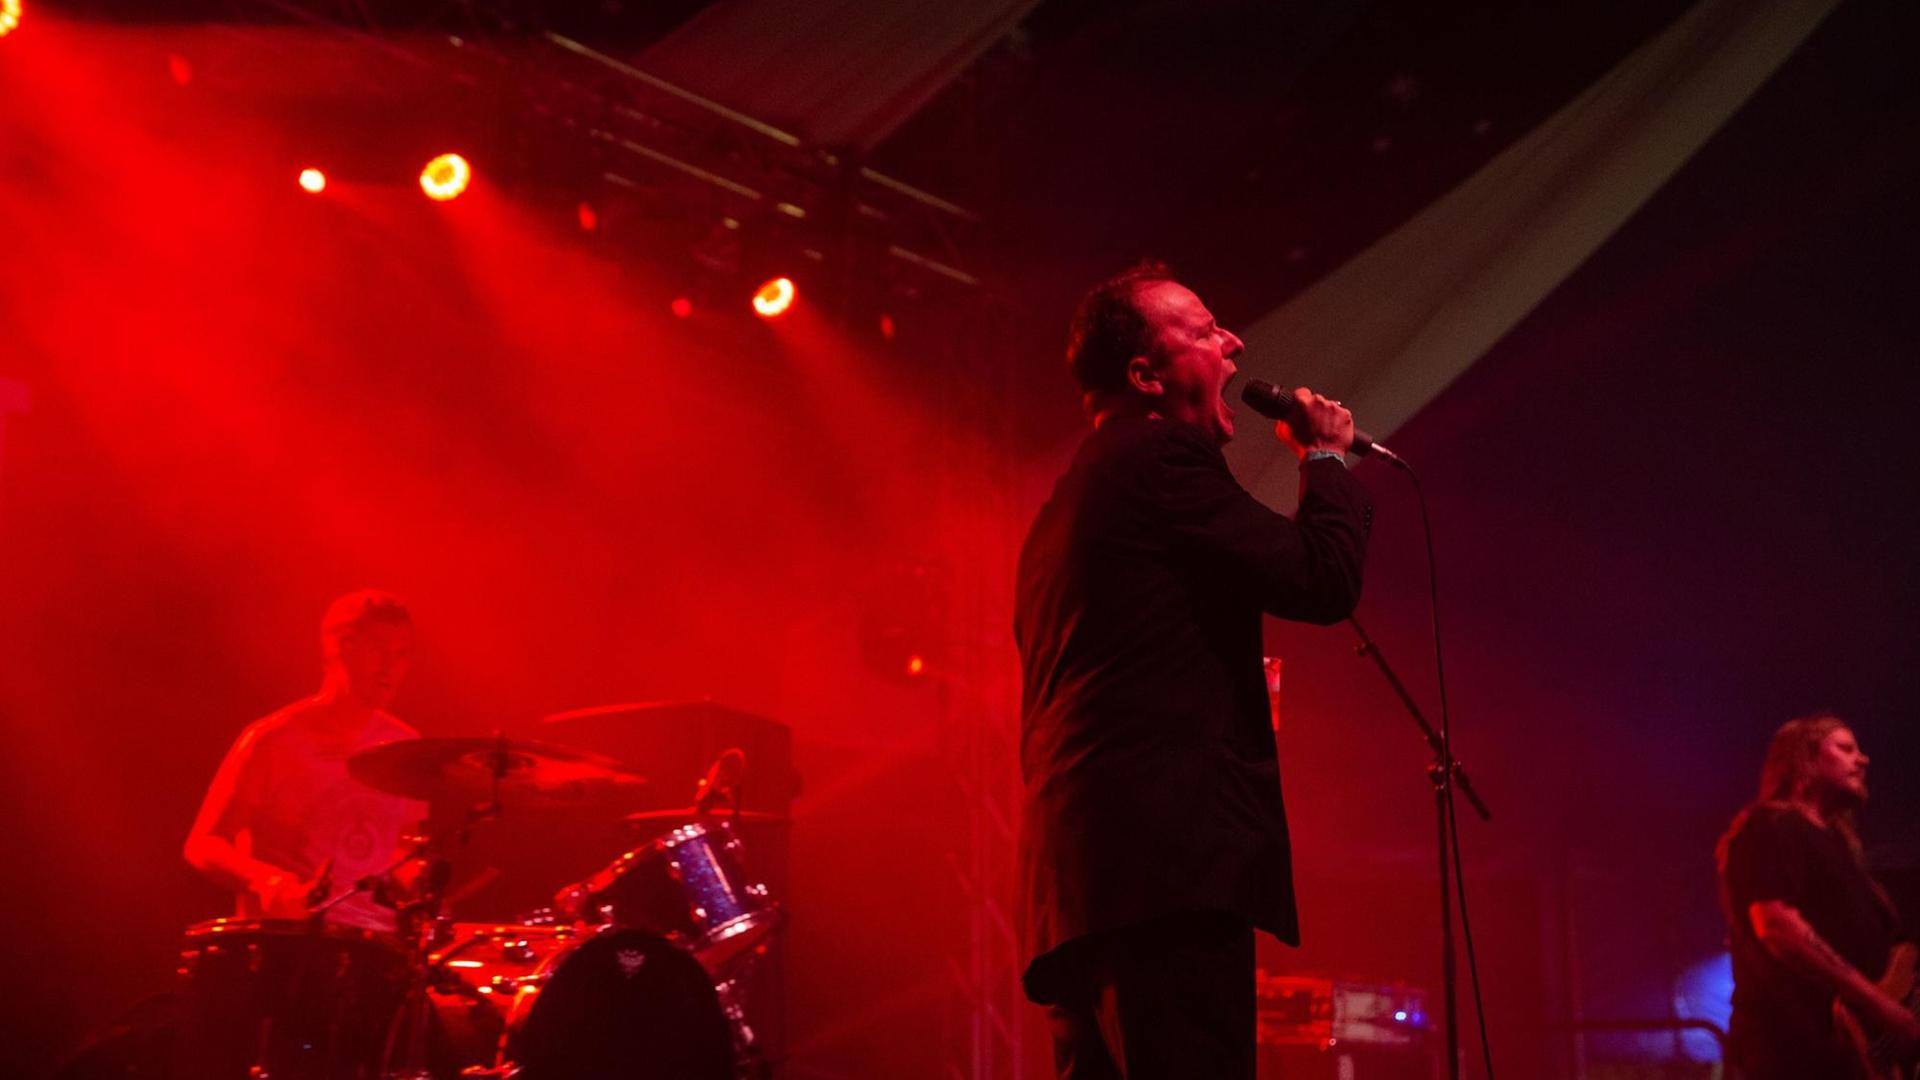 Die US-Band Protomartyr bei einem Konzert im Jahr 2018: Die Bühne ist in rotes Licht getaucht.